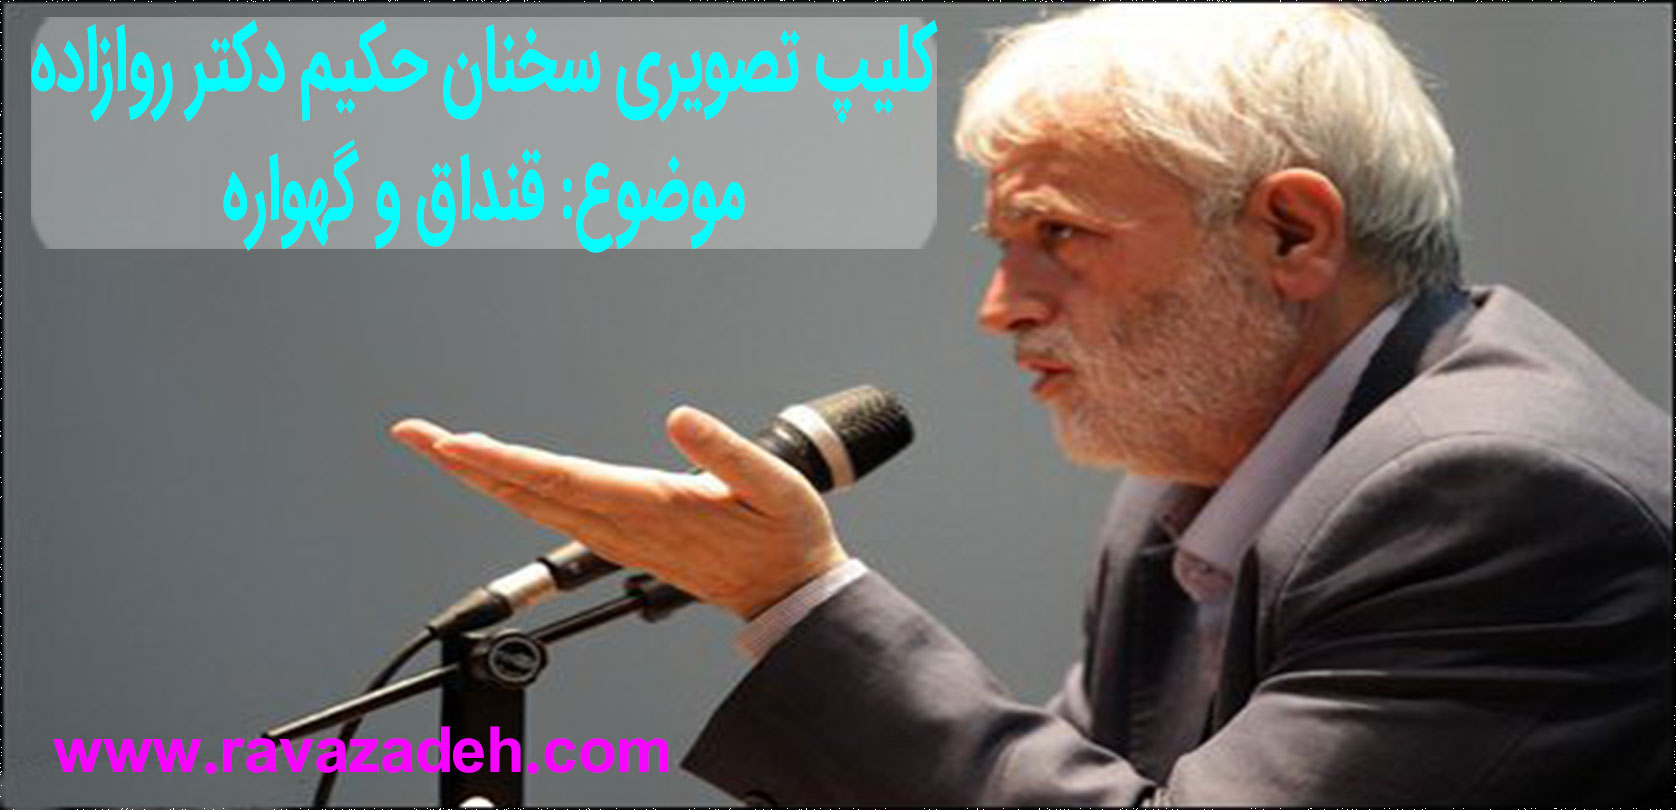 تصویر از قنداق و گهواره + کلیپ تصویری سخنرانی حکیم دکتر روازاده